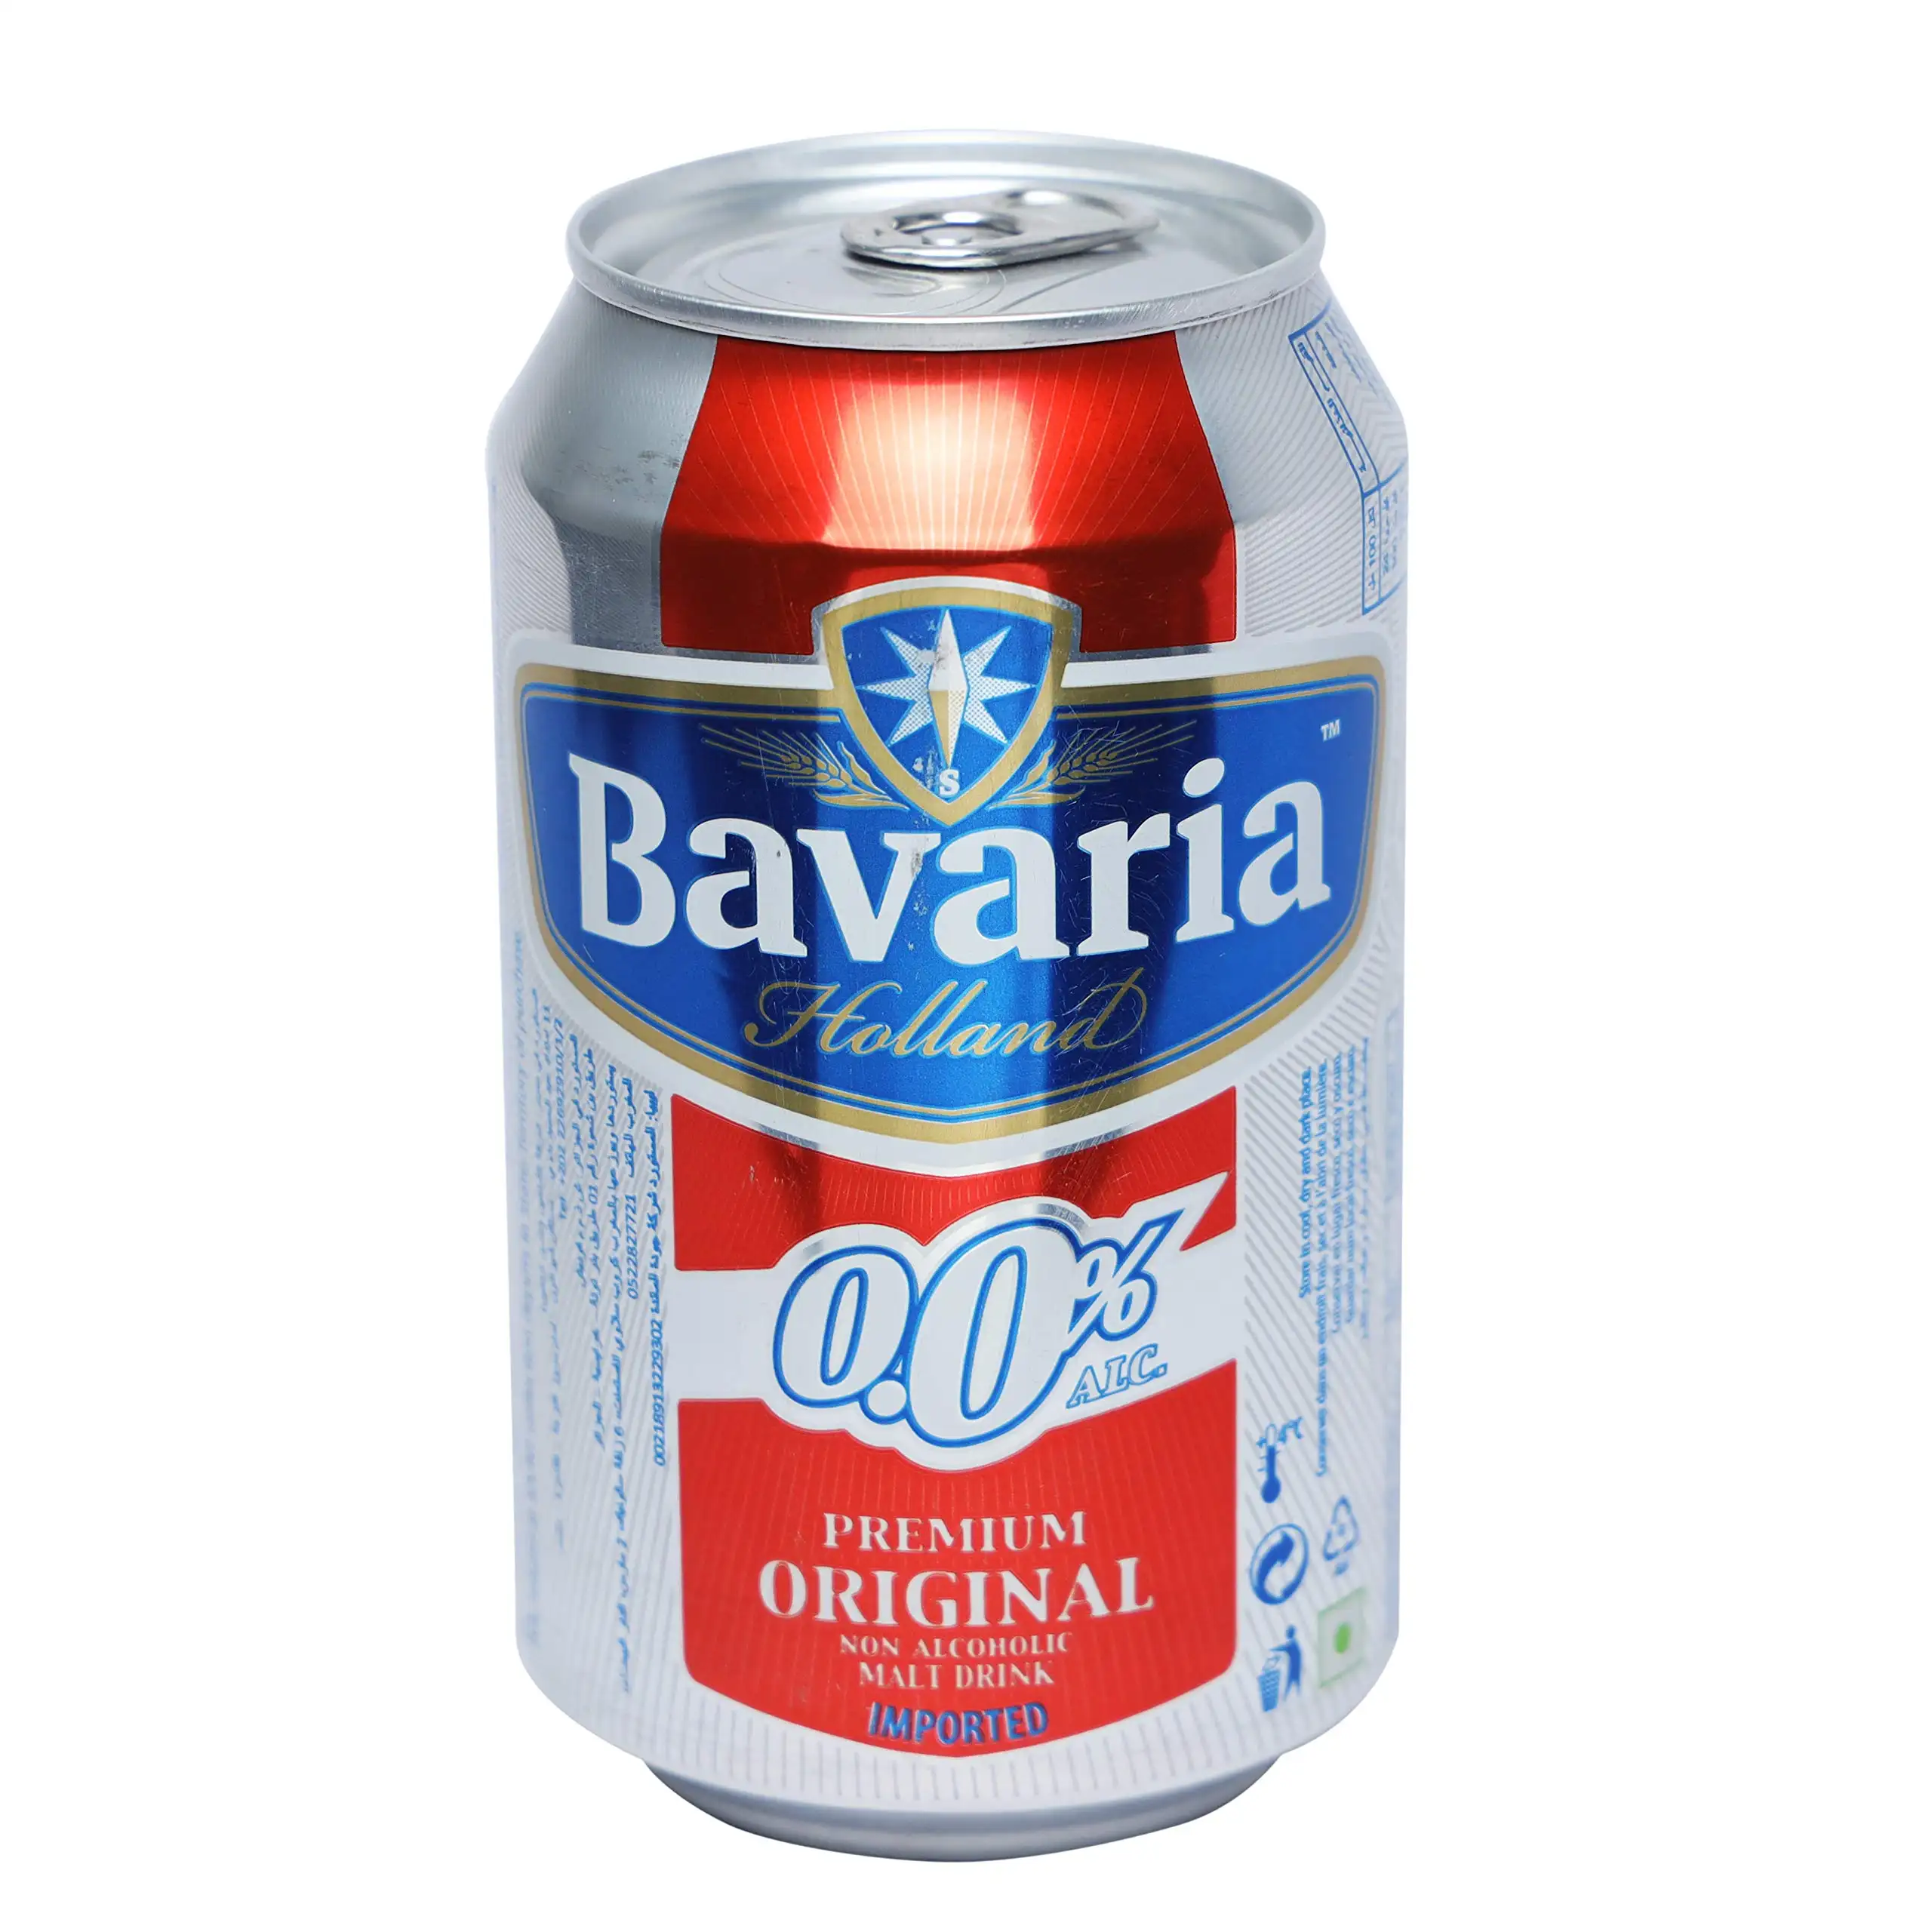 Top Qualität Bayerisches nicht alkoholdrückendes Original-Lagerbier, 0,0% Alkohol, 330-ml-Flaschenpackung mit 24 Stück